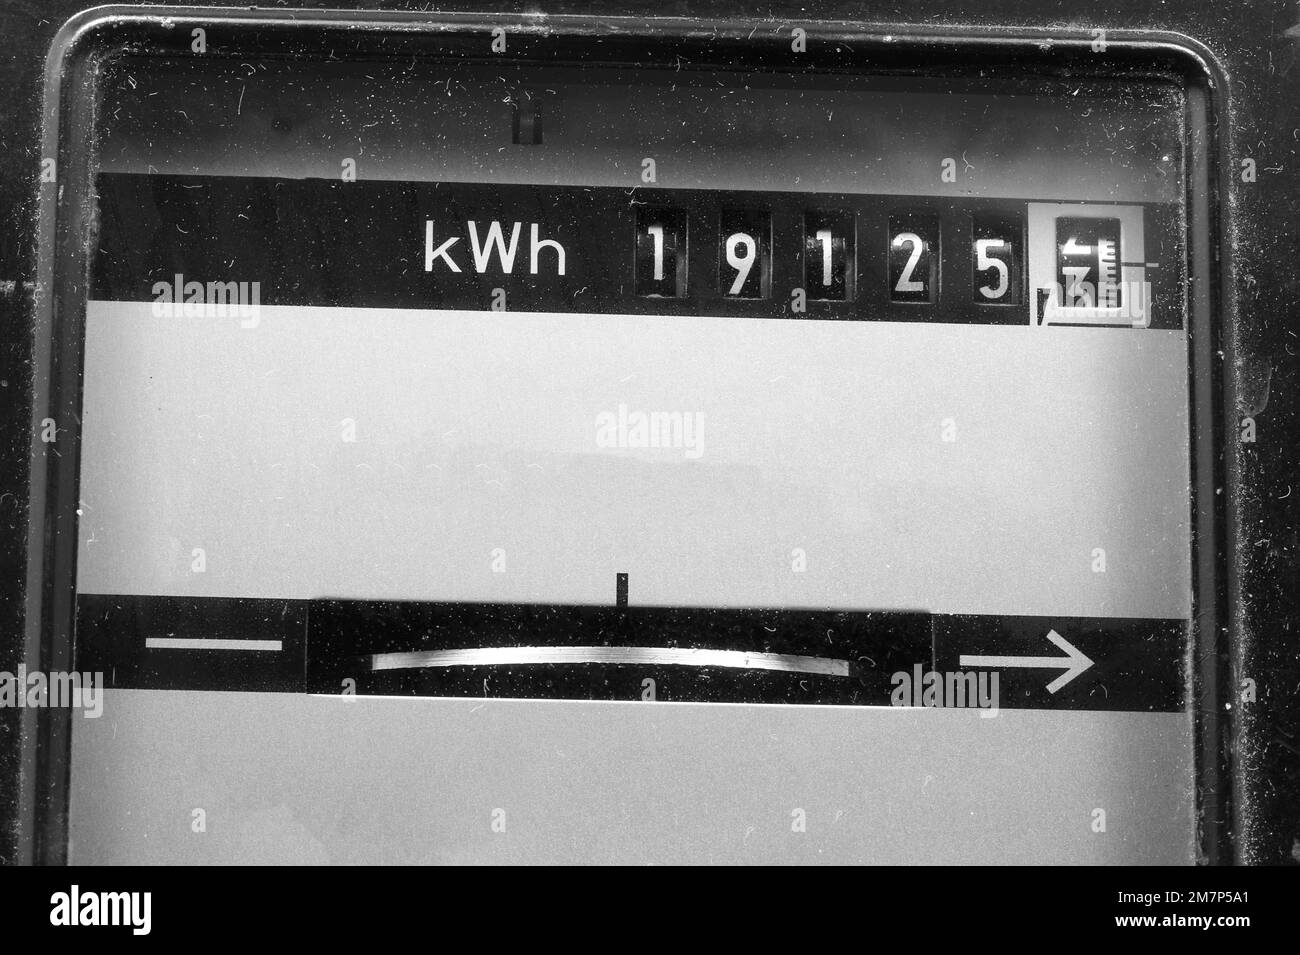 Compteur électrique antique avec des nombres en kwh pour mesurer l'électricité consommée Banque D'Images